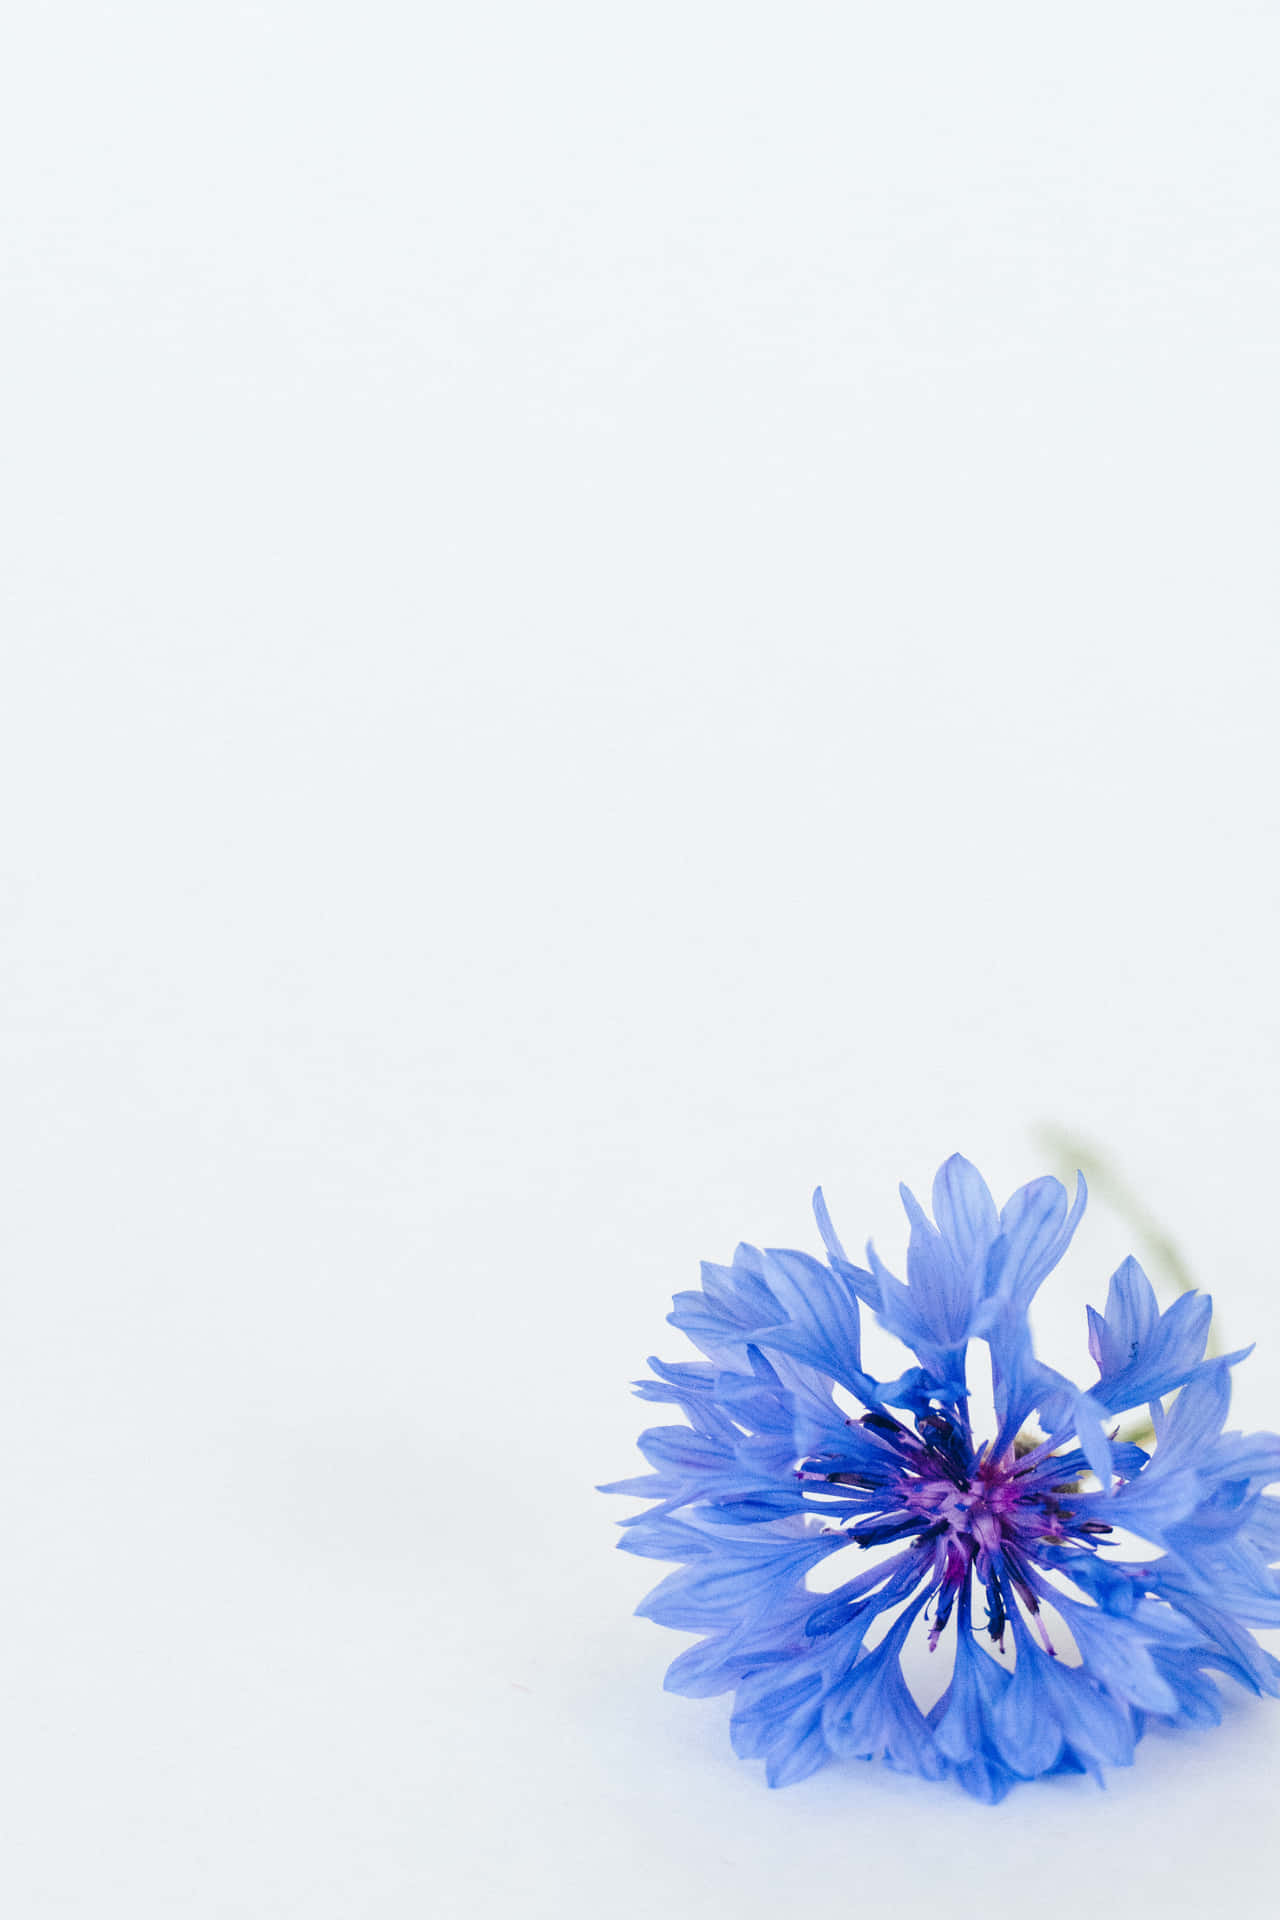 Cornflower Blue Flower White Picture